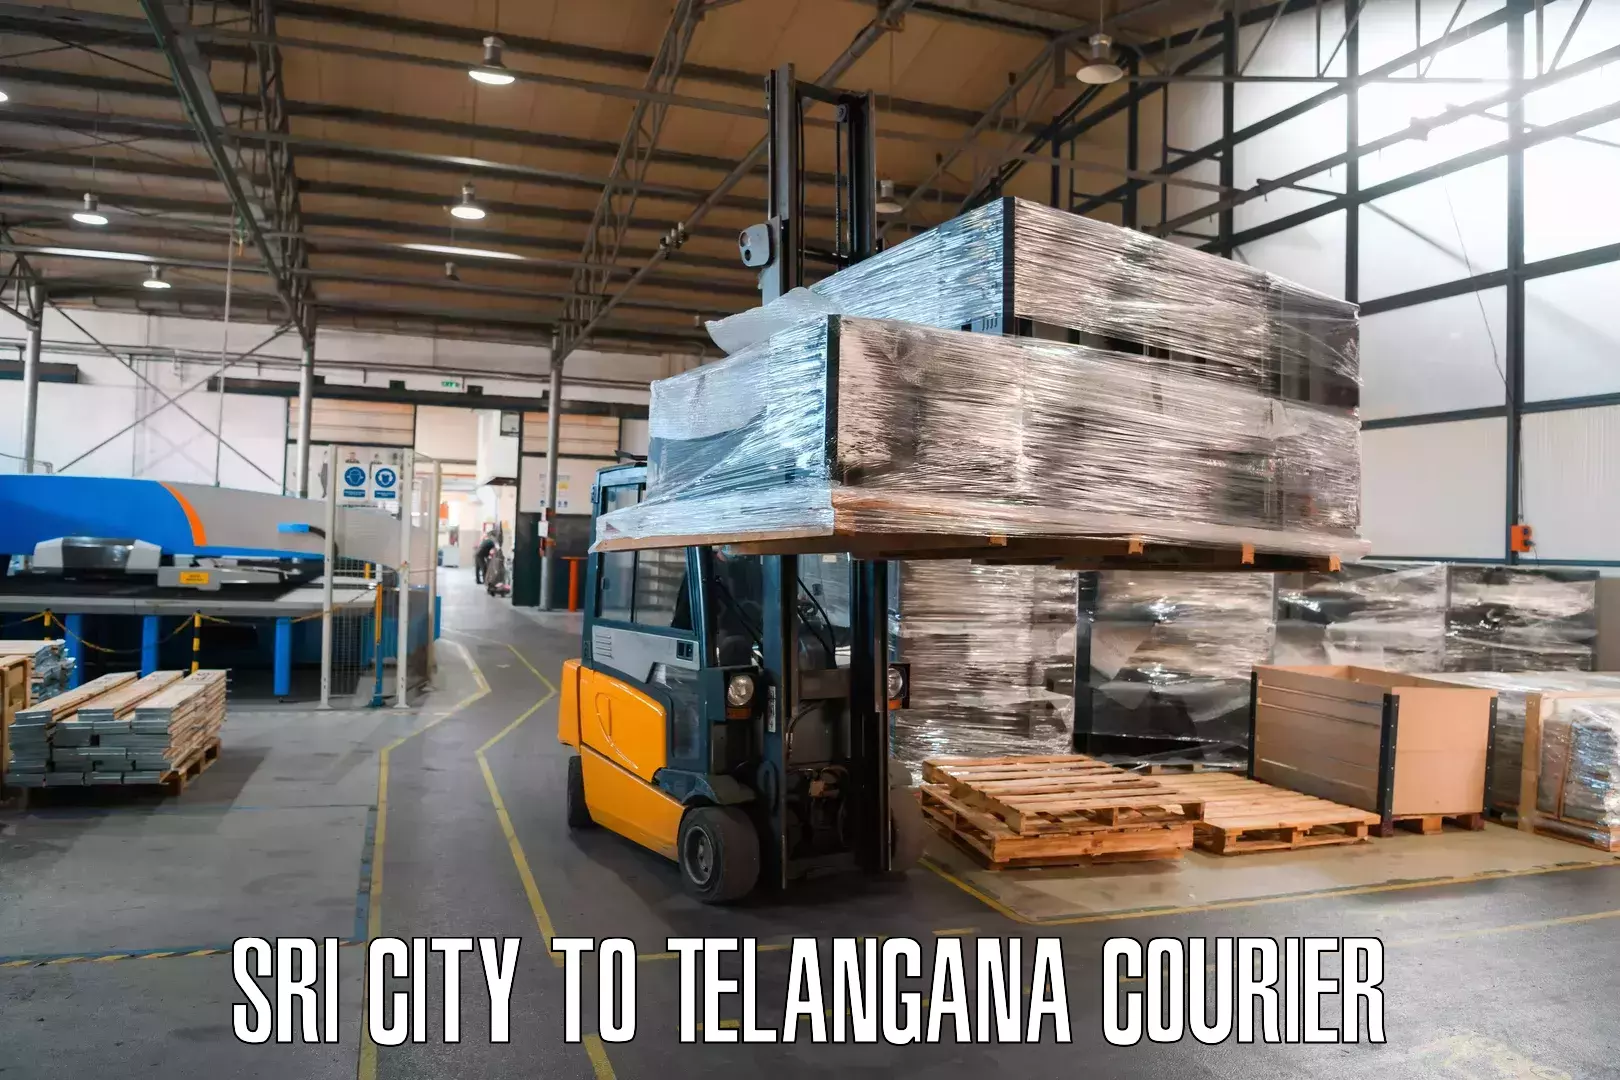 Courier service comparison Sri City to Allapalli